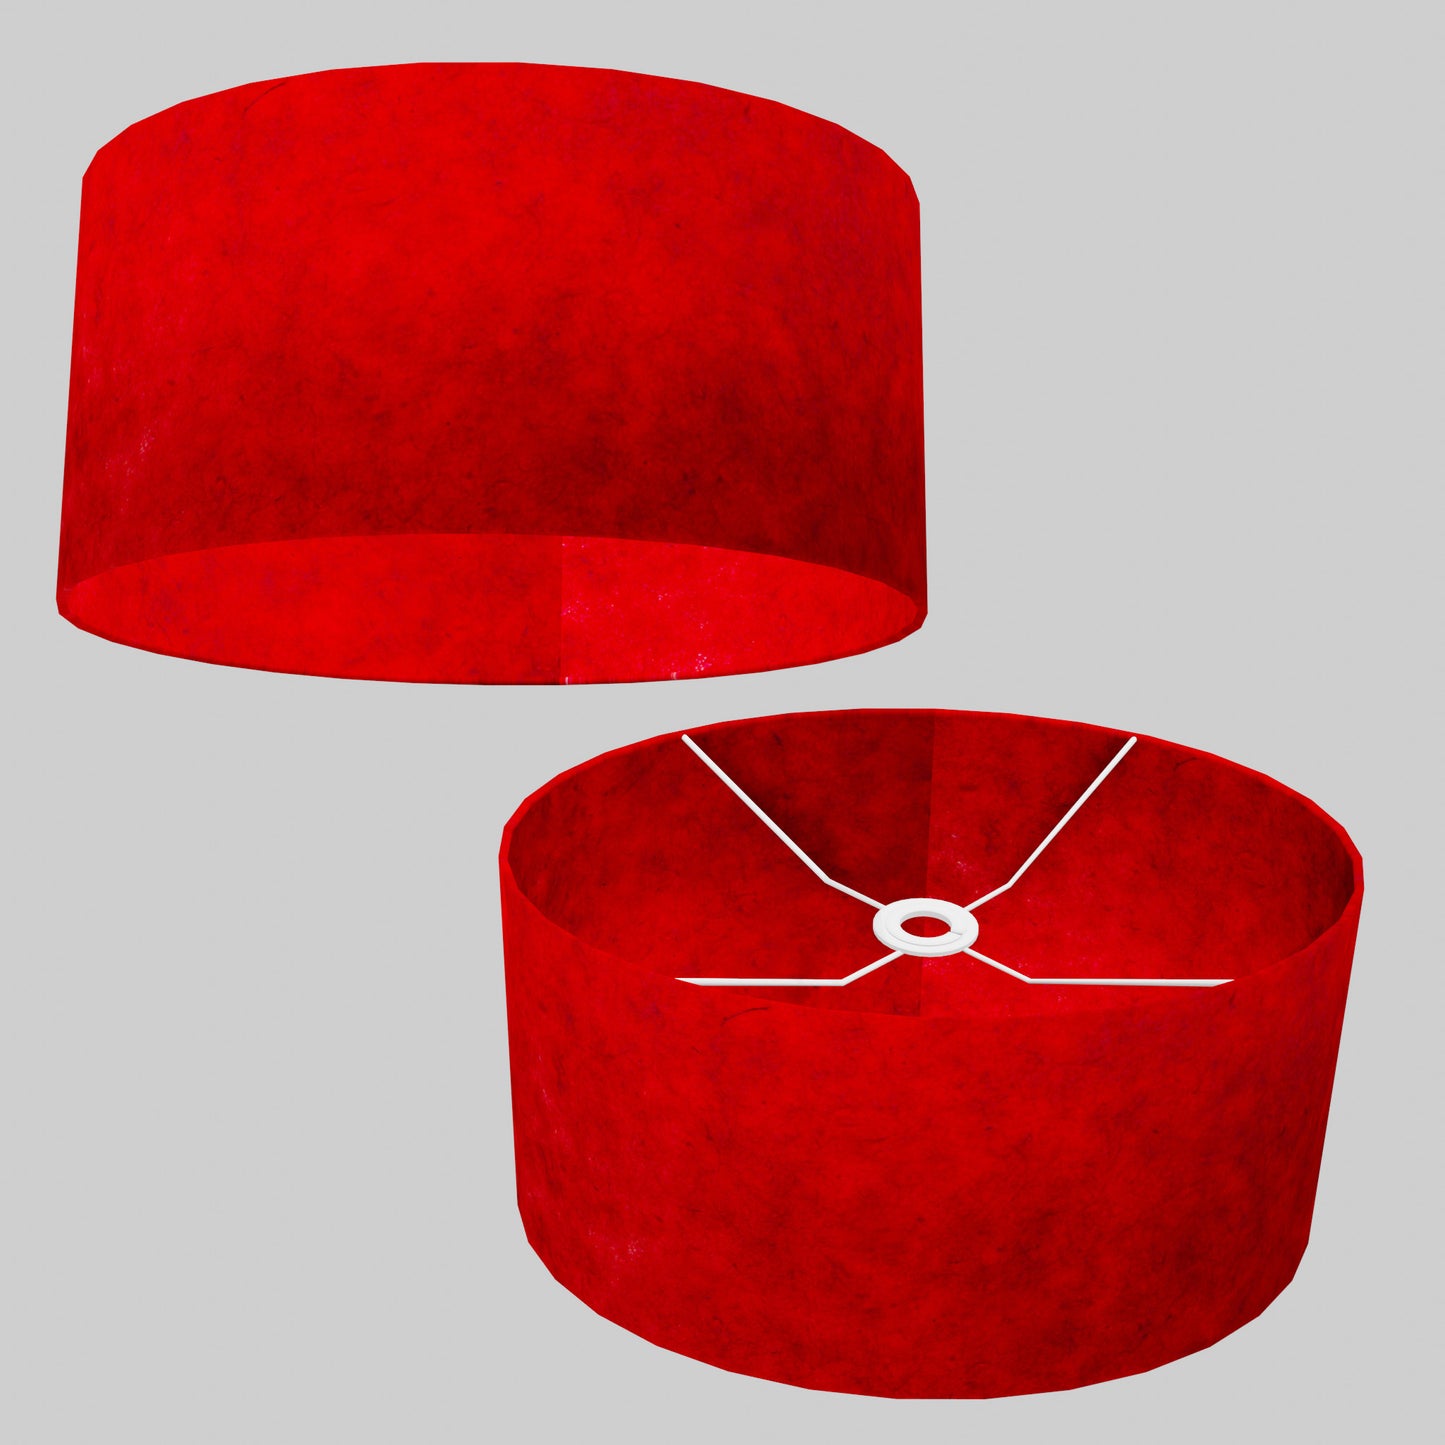 Oval Lamp Shade - P60 - Red Lokta, 40cm(w) x 20cm(h) x 30cm(d)